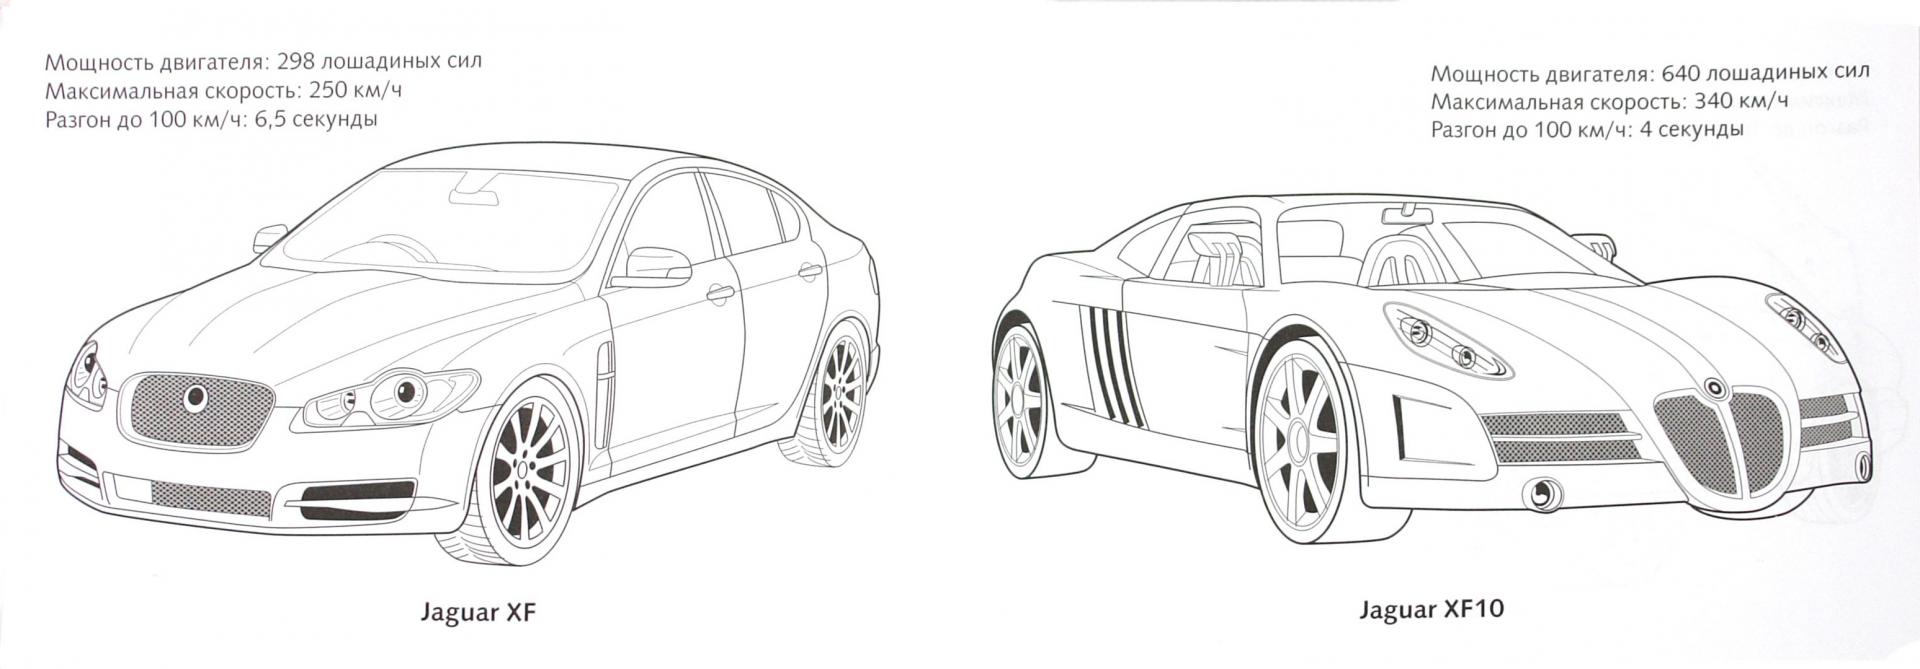 Иллюстрация 1 из 6 для Автомобили мира: JAGUAR | Лабиринт - книги. Источник: Лабиринт